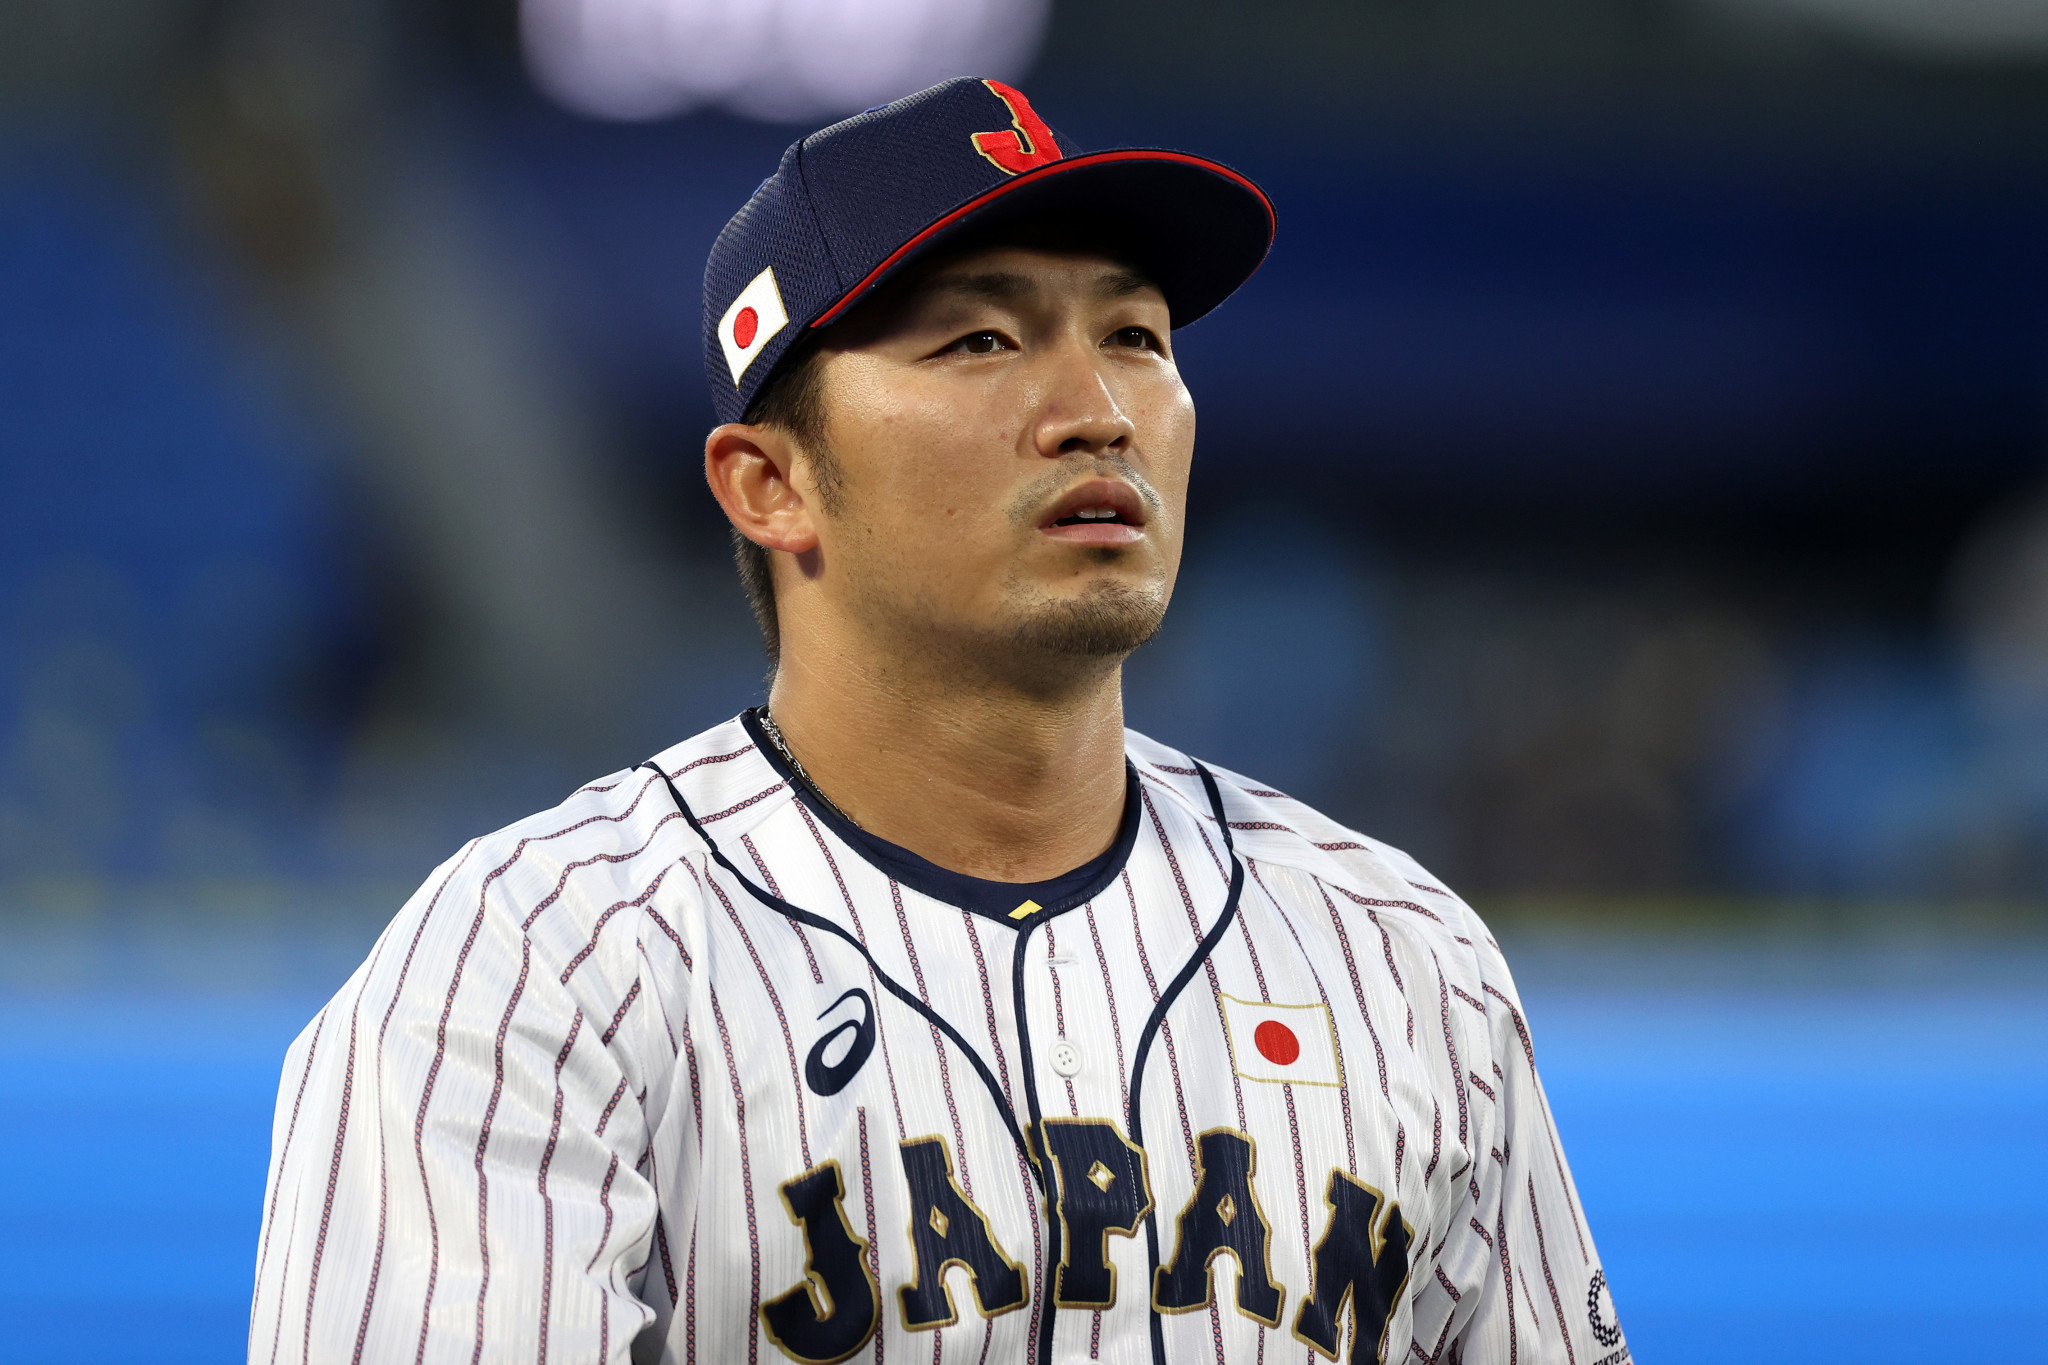 Zlatá medailistka z Tokia 2020 Suzuki bude hrát s Japonskem na World Baseball Classic